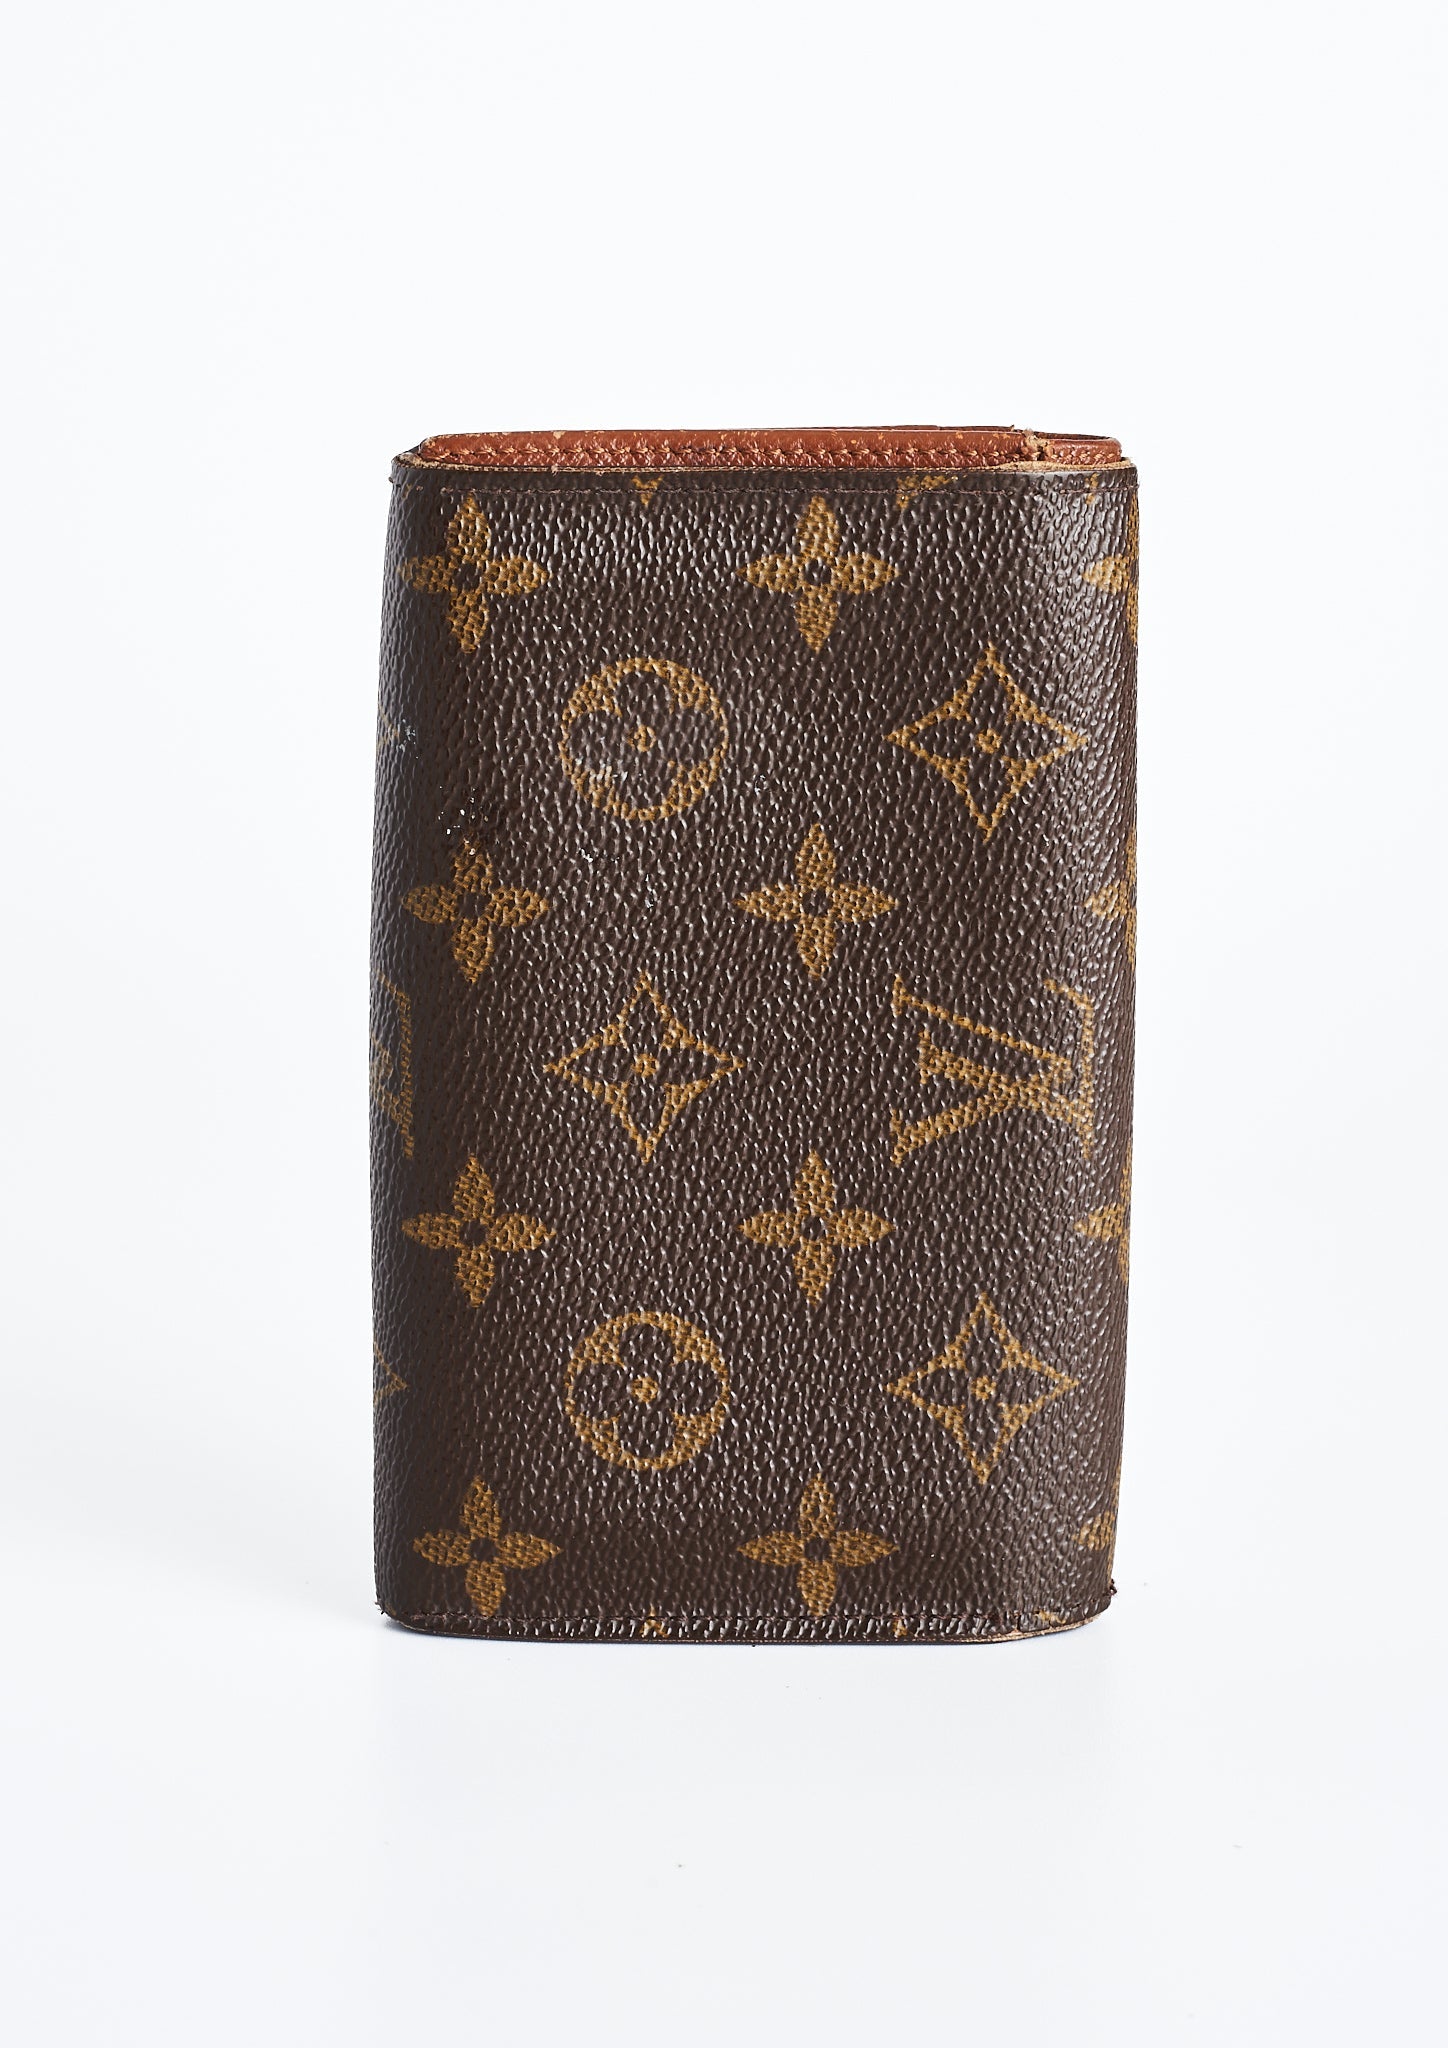 Louis Vuitton Monogram Zip Passport Holder Wallet in Brown Coated